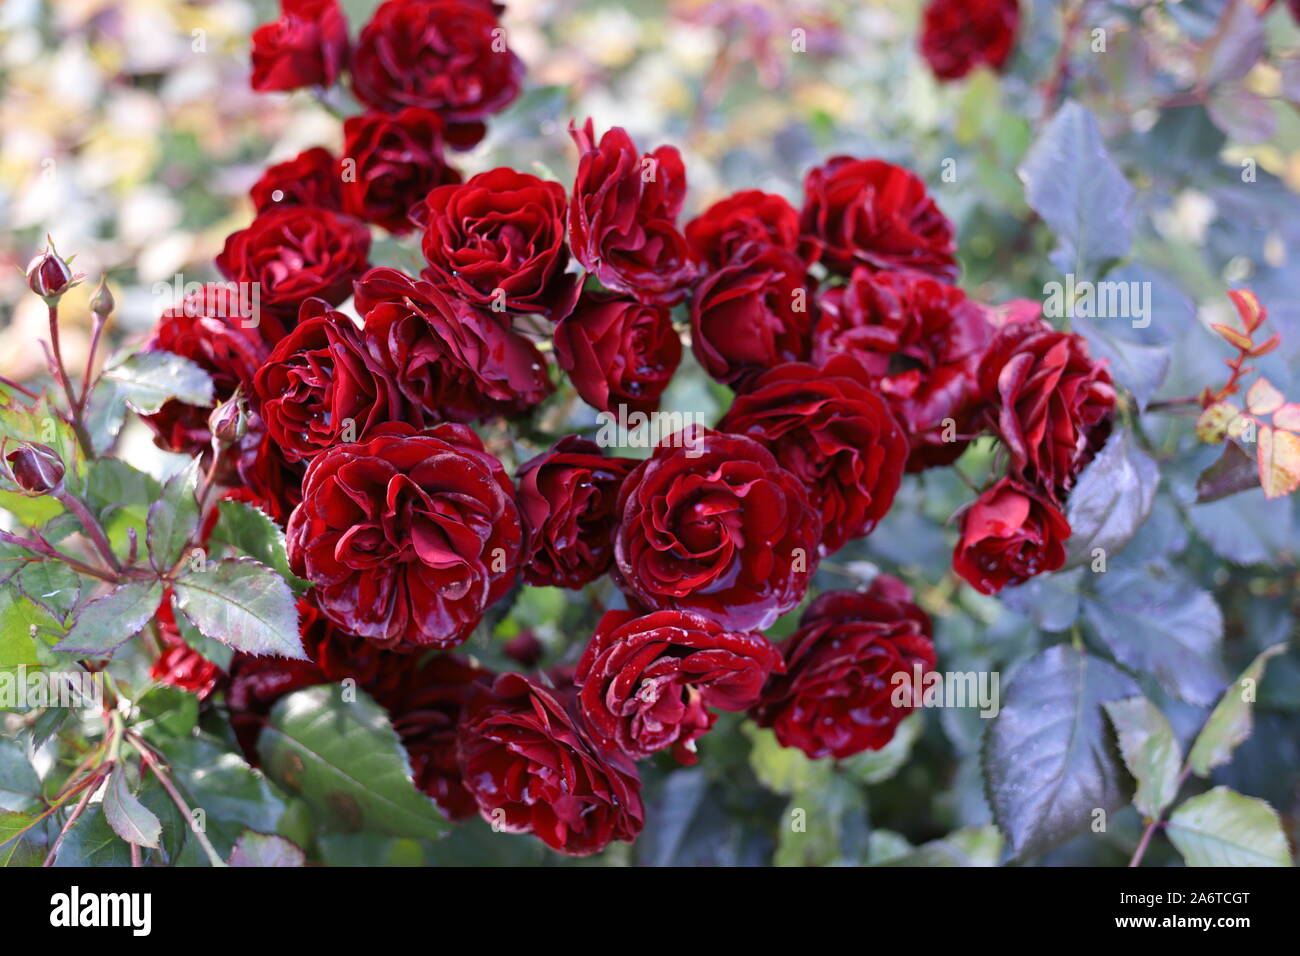 De belles roses rouges sang dans le jardin. Gouttes de pluie comme cristaux sur les pétales, taches de soleil. Photo de fond romantique. Mariage, Saint Valentin da Banque D'Images